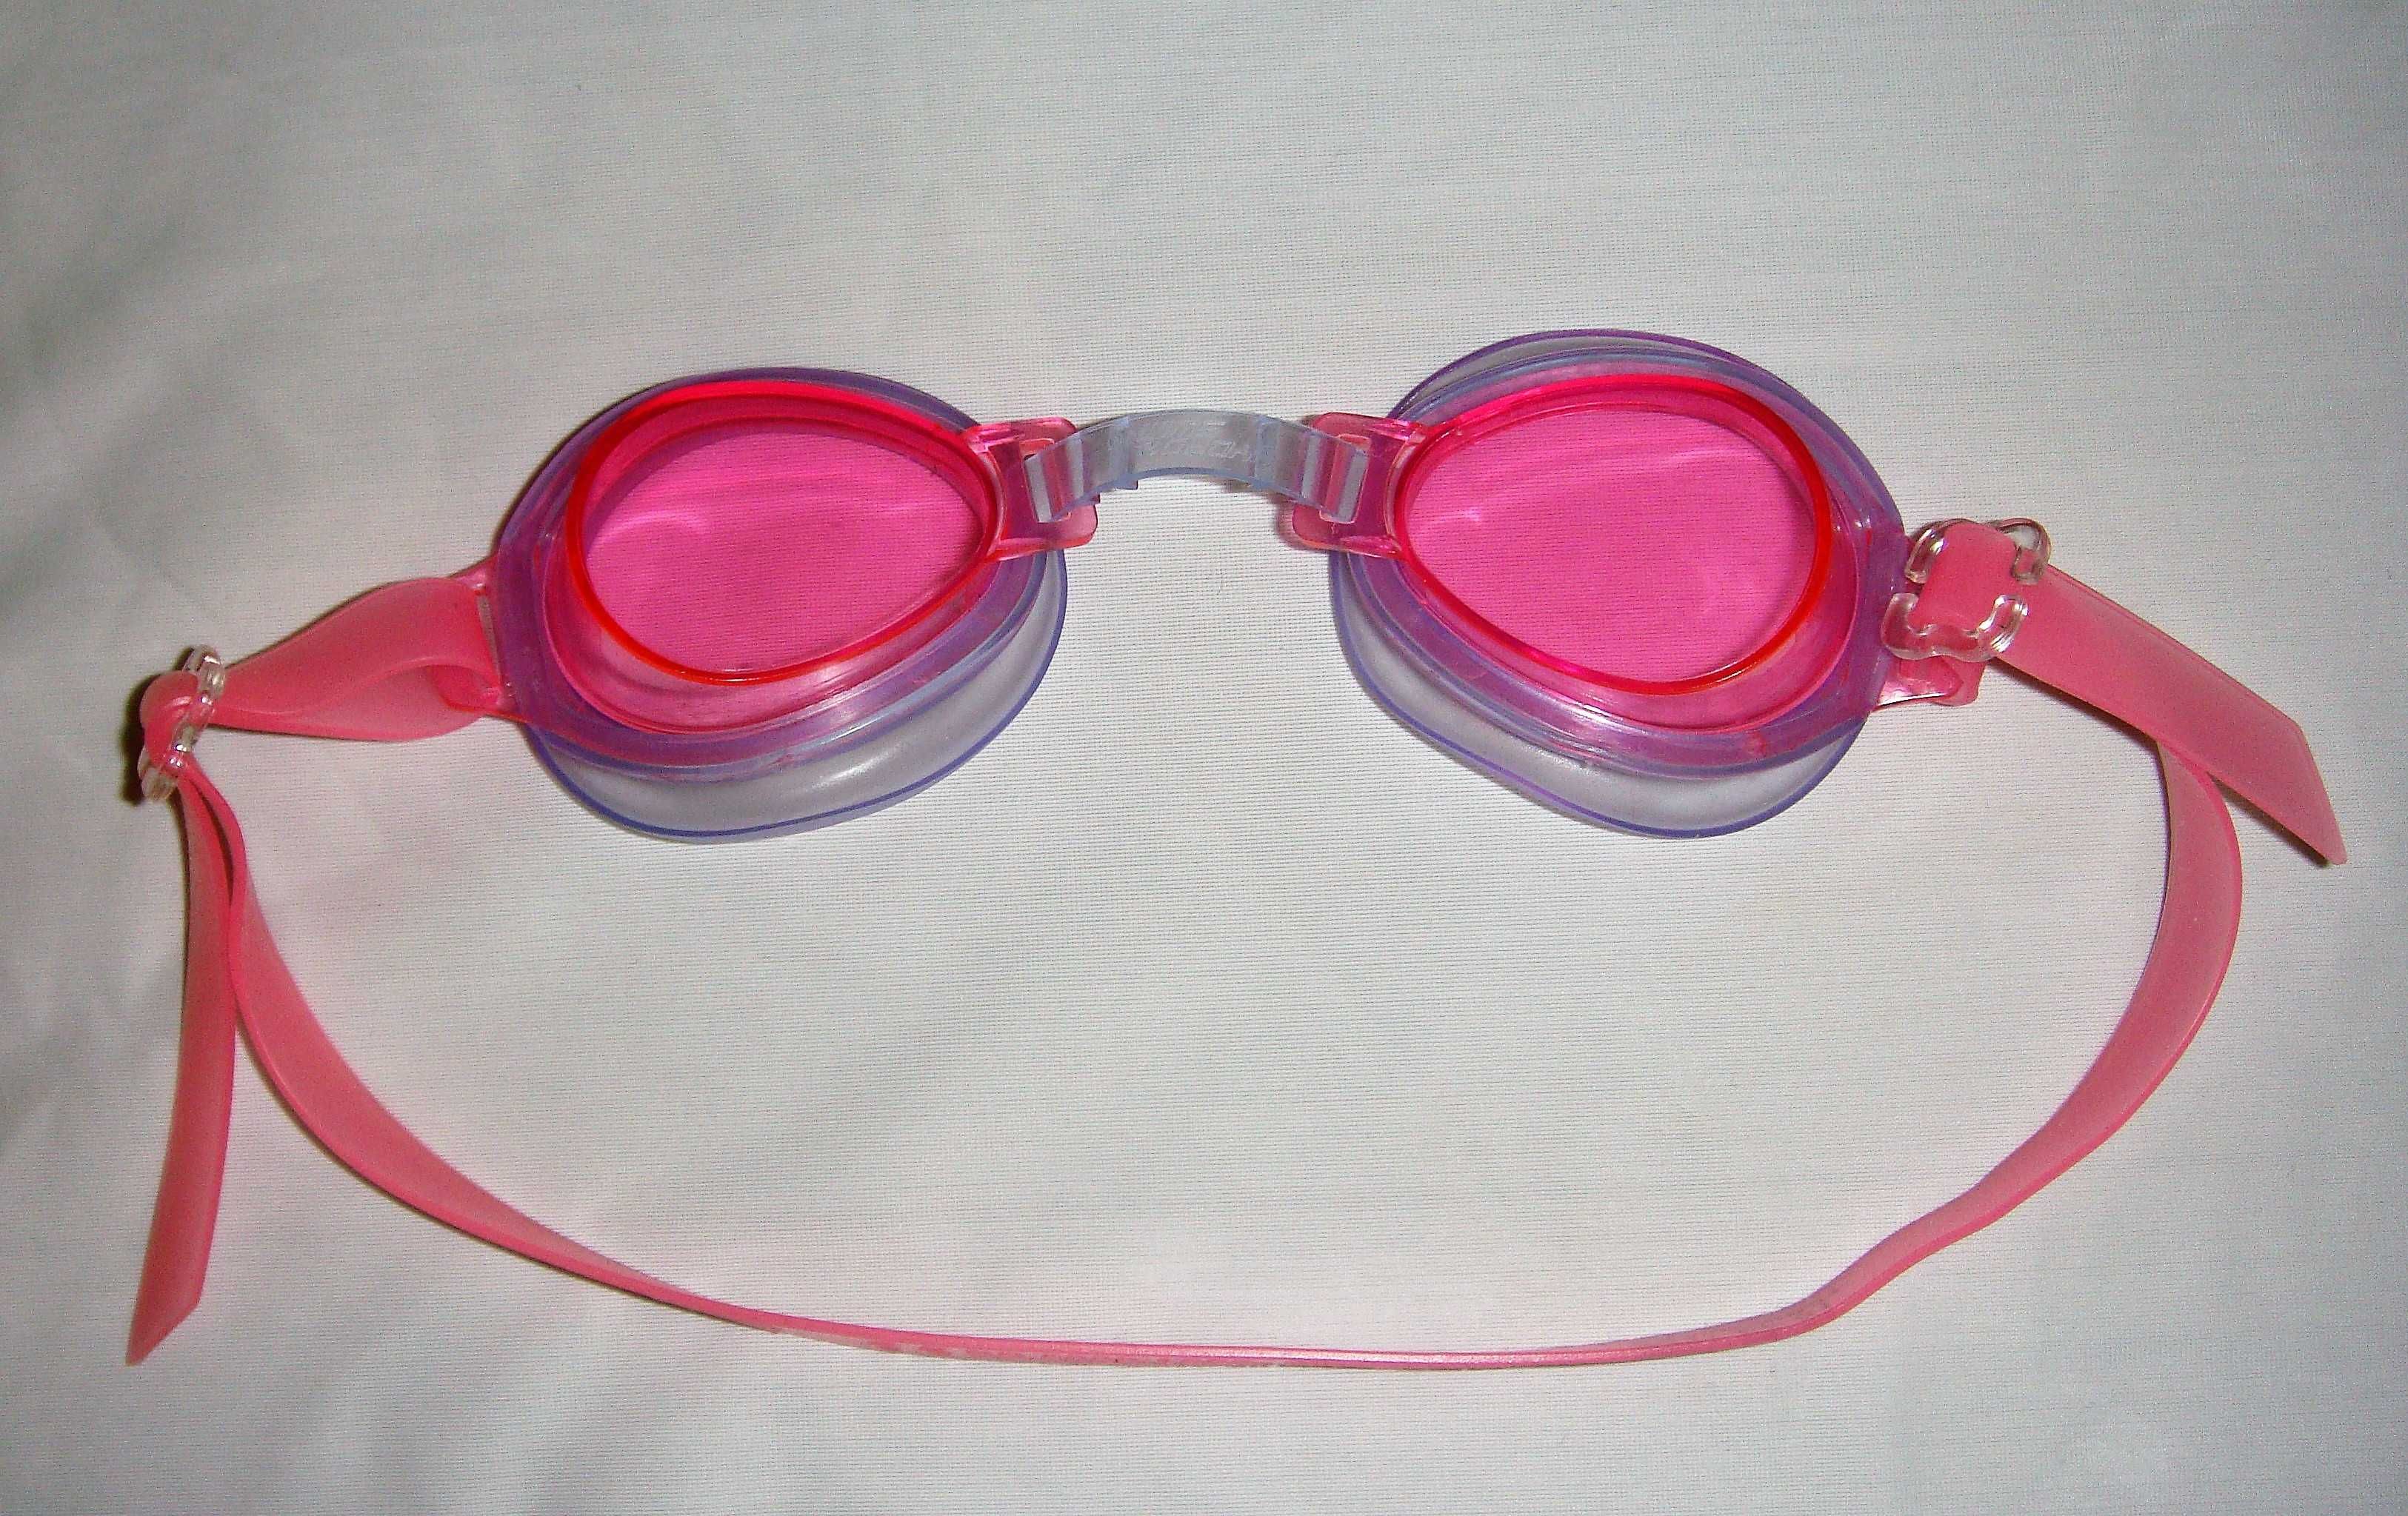 Новые детские плавательные очки BESTWAY для плавания бассейна